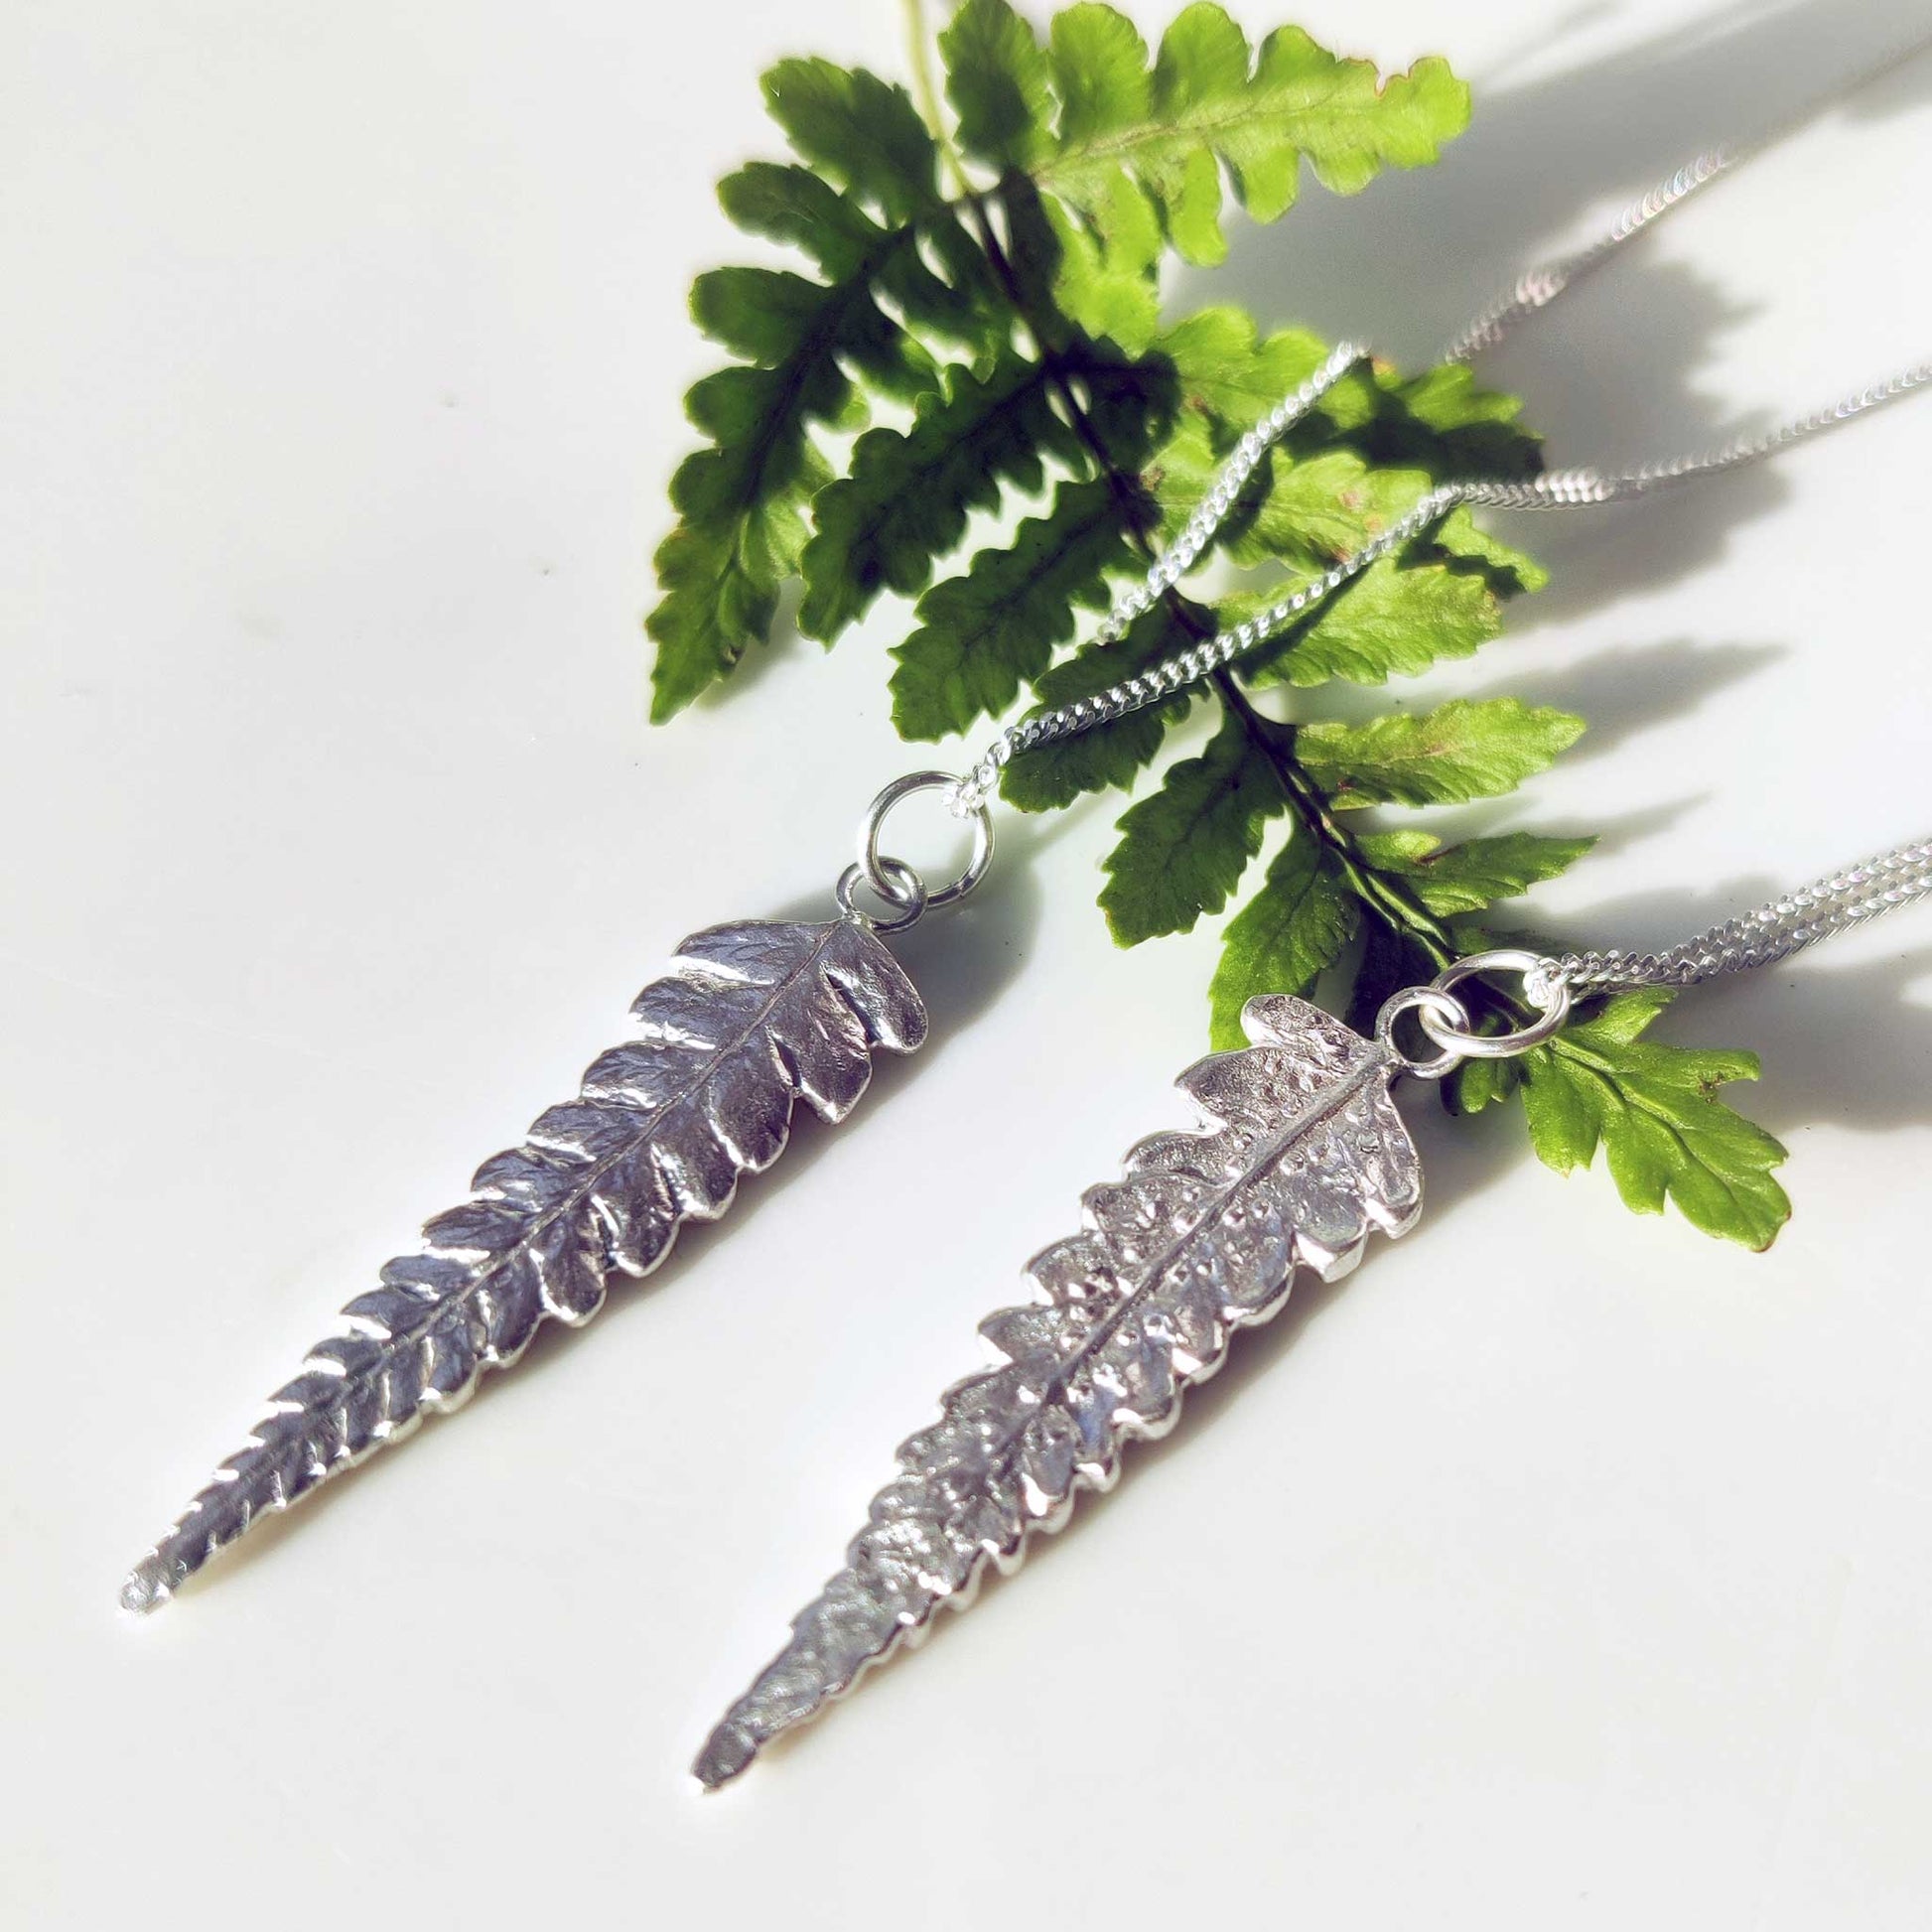 Two sterling silver fern leaf pendants